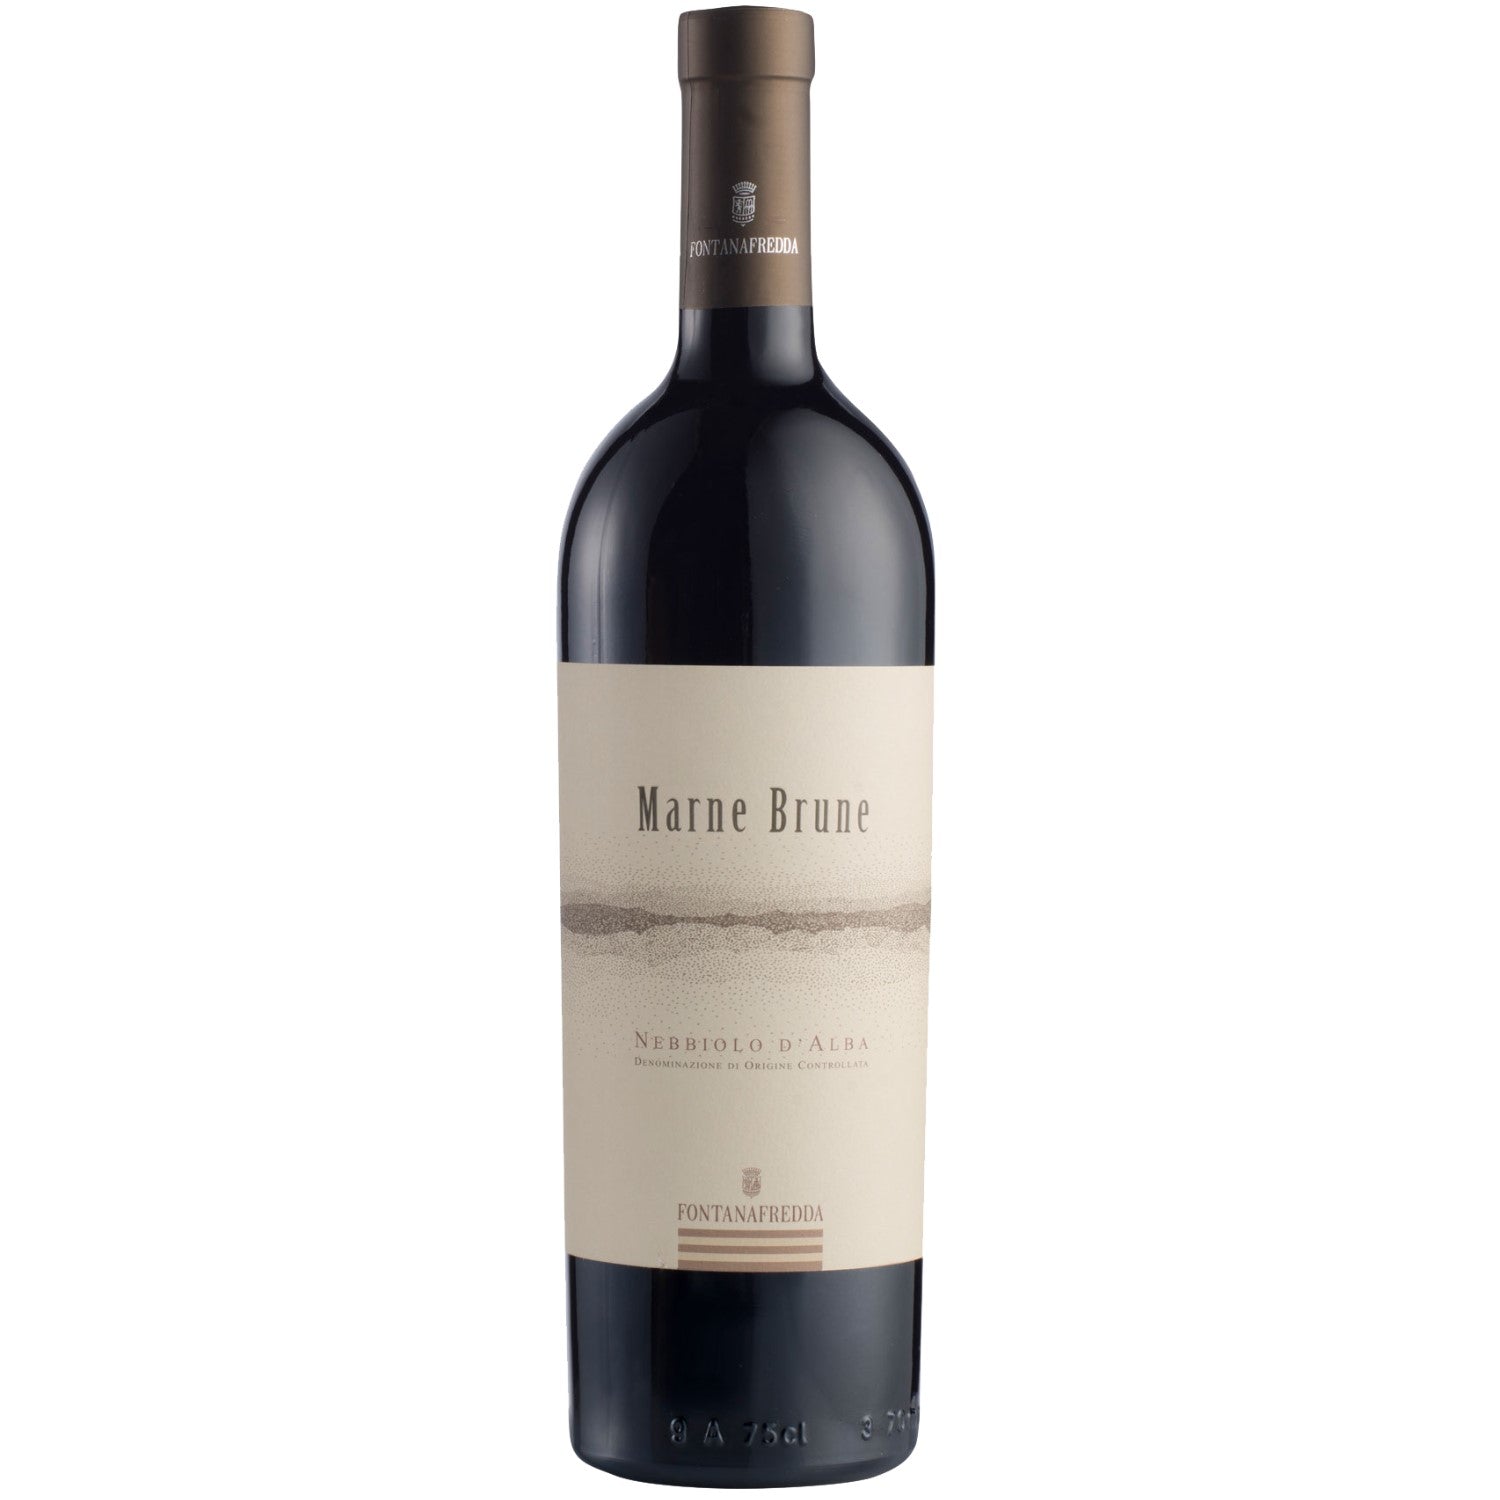 Fontanafredda Marne Brune Nebbiolo d'Alba Rotwein Wein trocken Italien (6 x 0.75l) - Versanel -